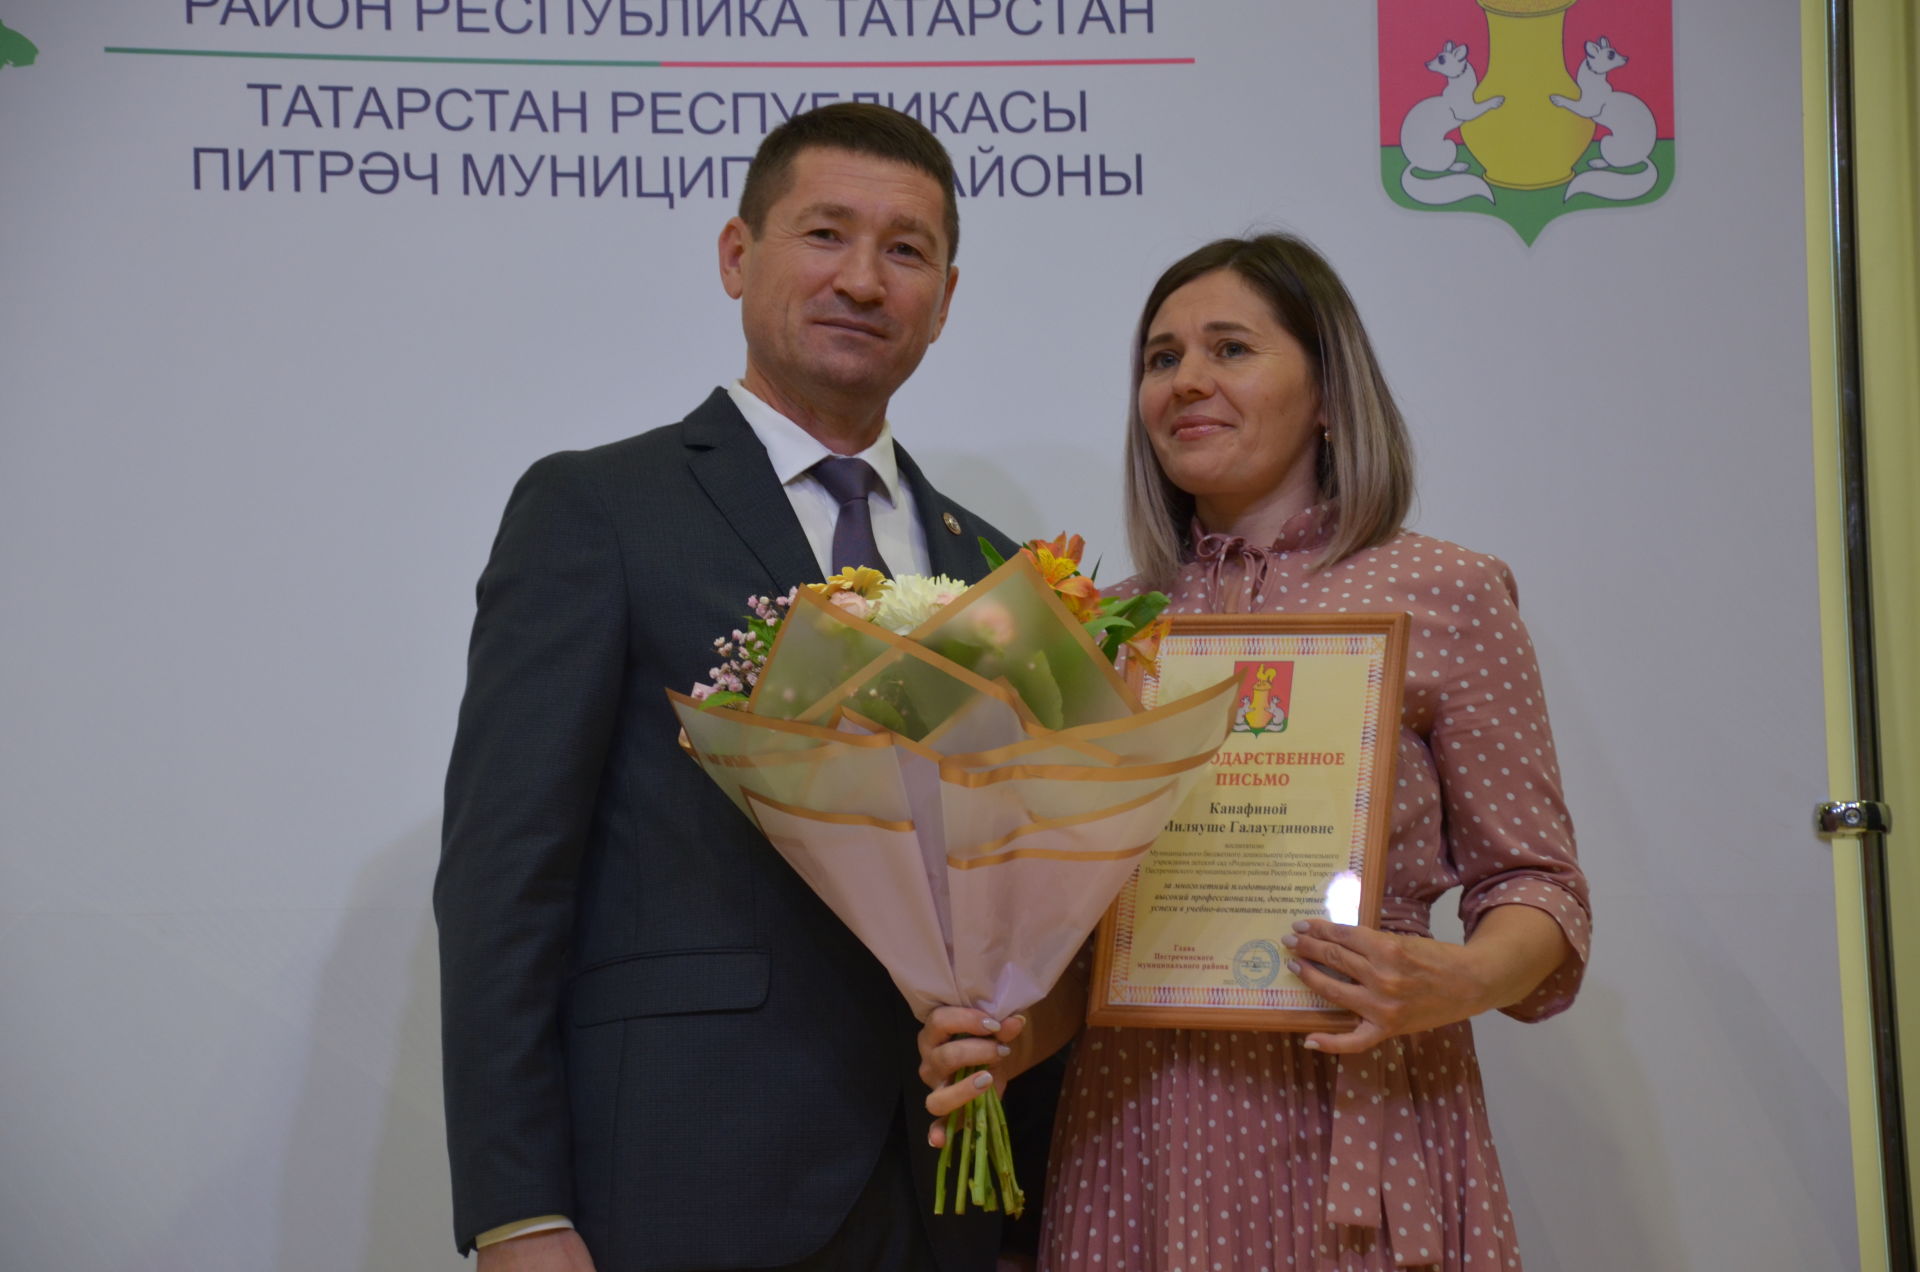 Наградили лучших педагогов Пестречинского района